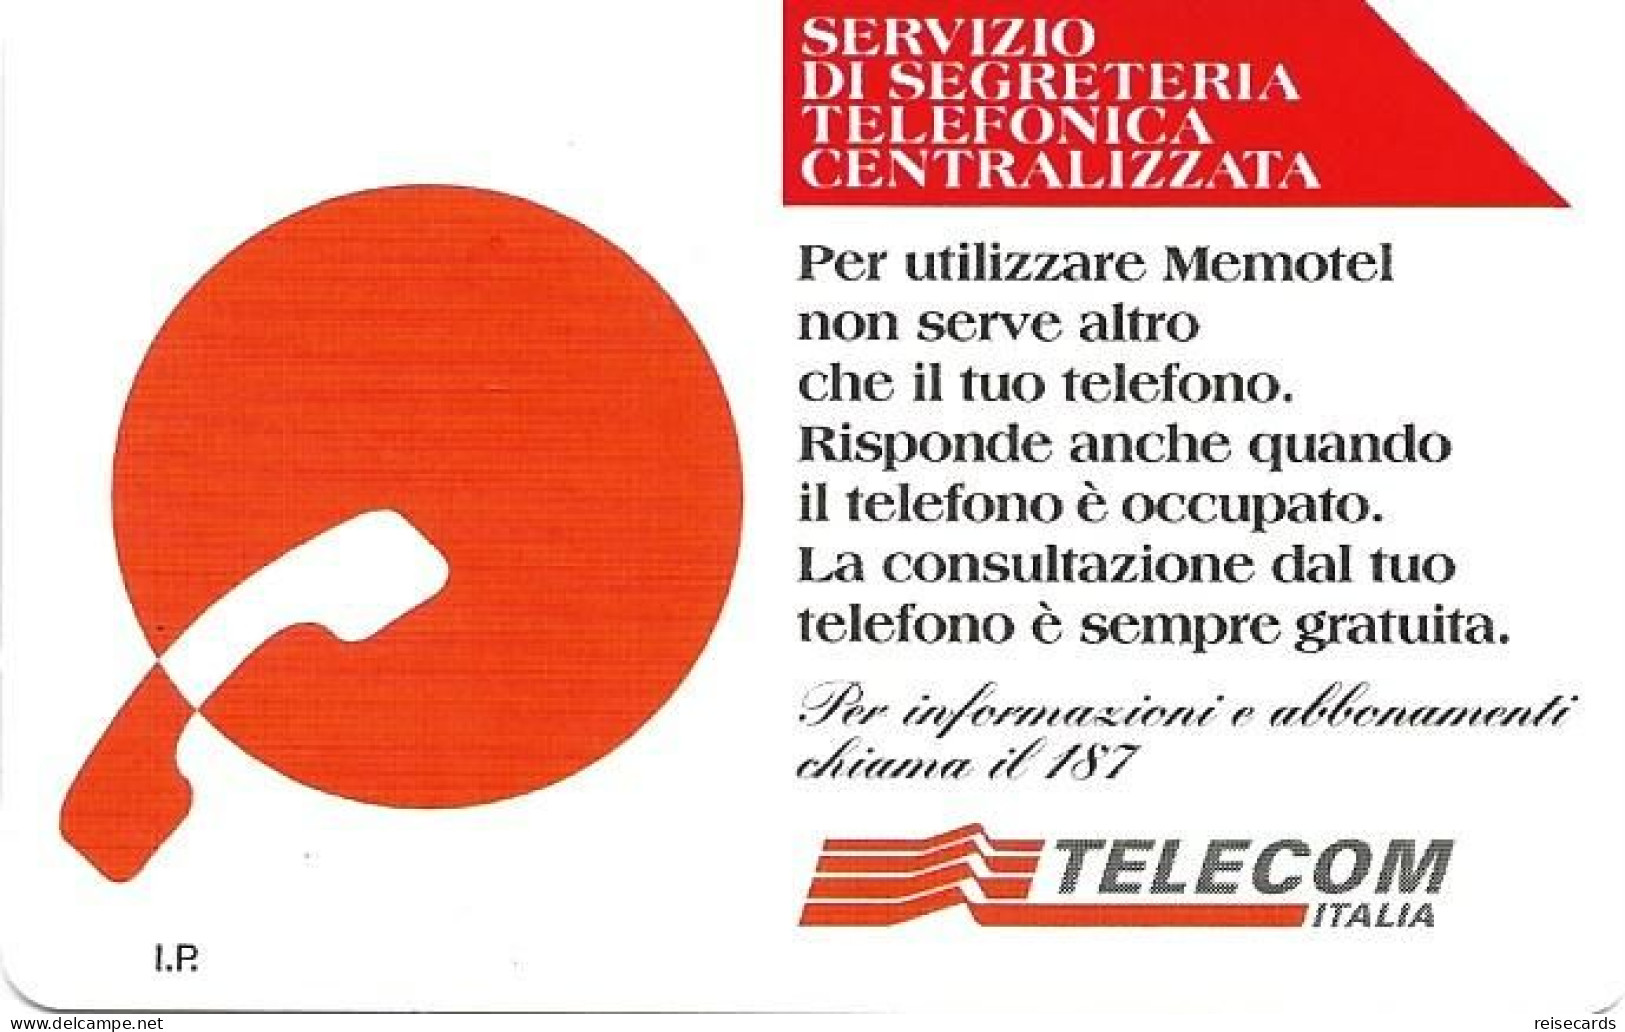 Italy: Telecom Italia - Servizio Di Segreteria Telefonica Centralizzata - Pubbliche Pubblicitarie